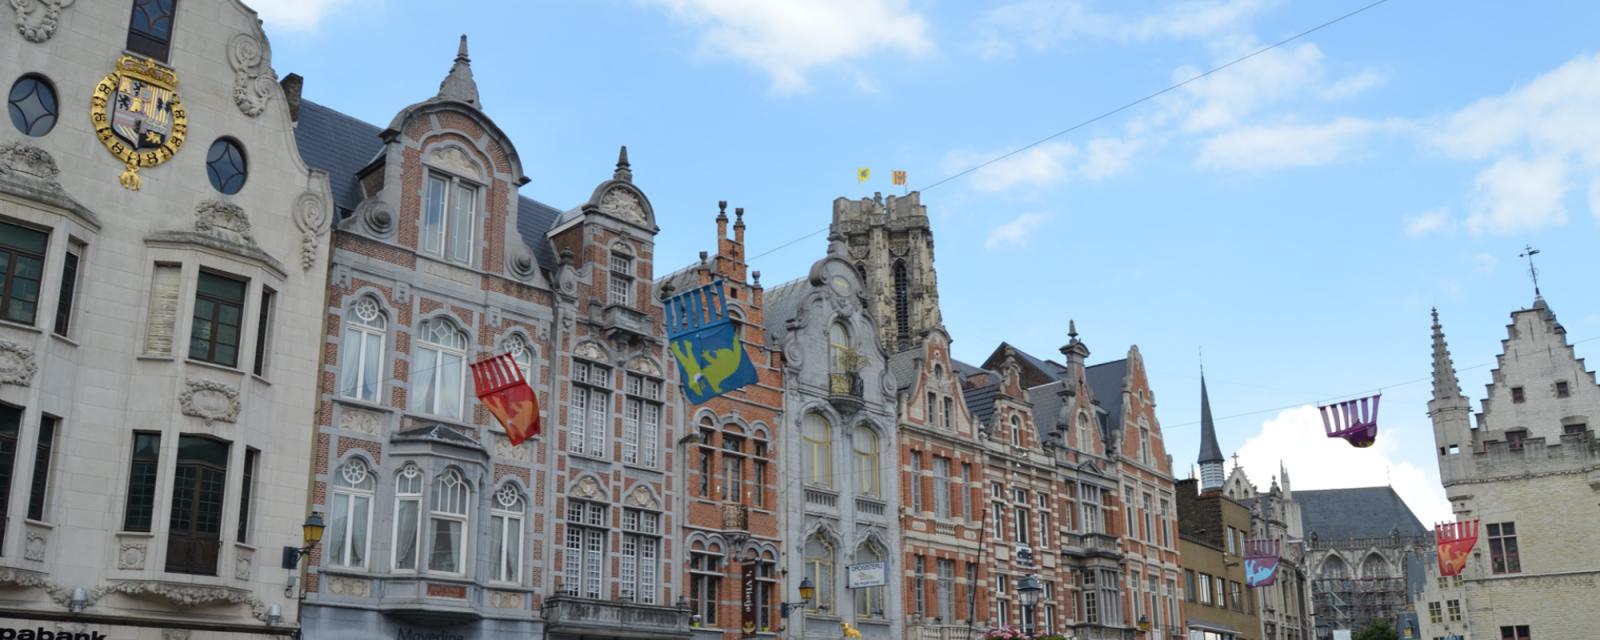 De mooiste bezienswaardigheden n de stad Mechelen 